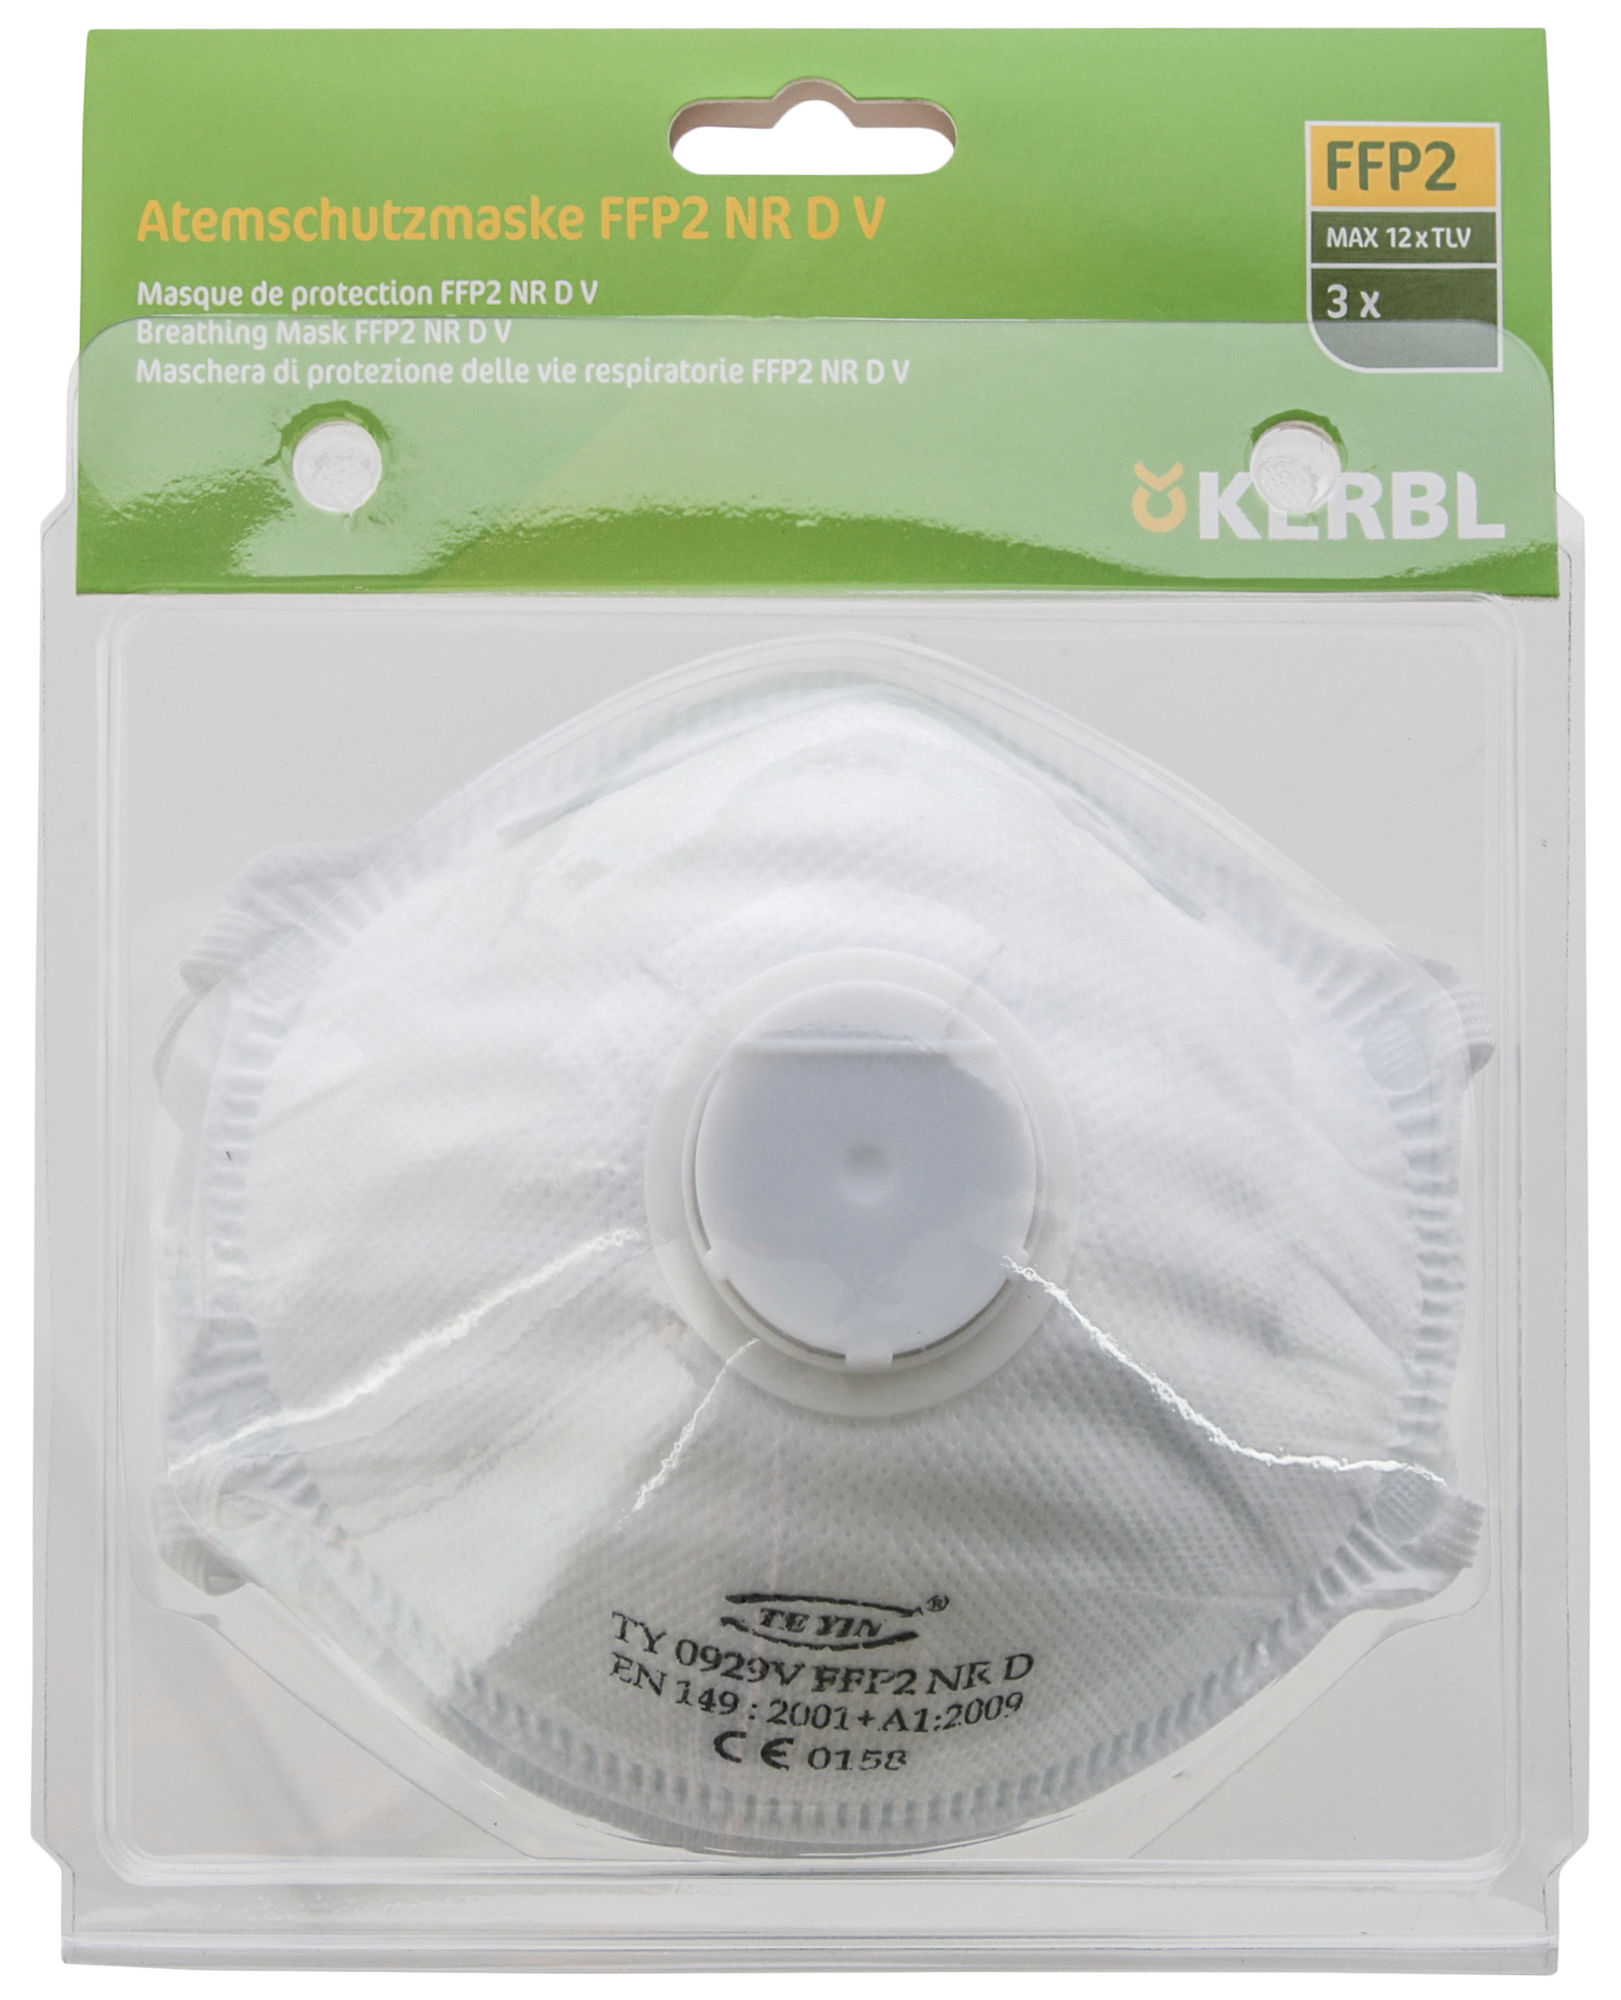 Atemschutzmaske FFP2 NRD mit Ventil